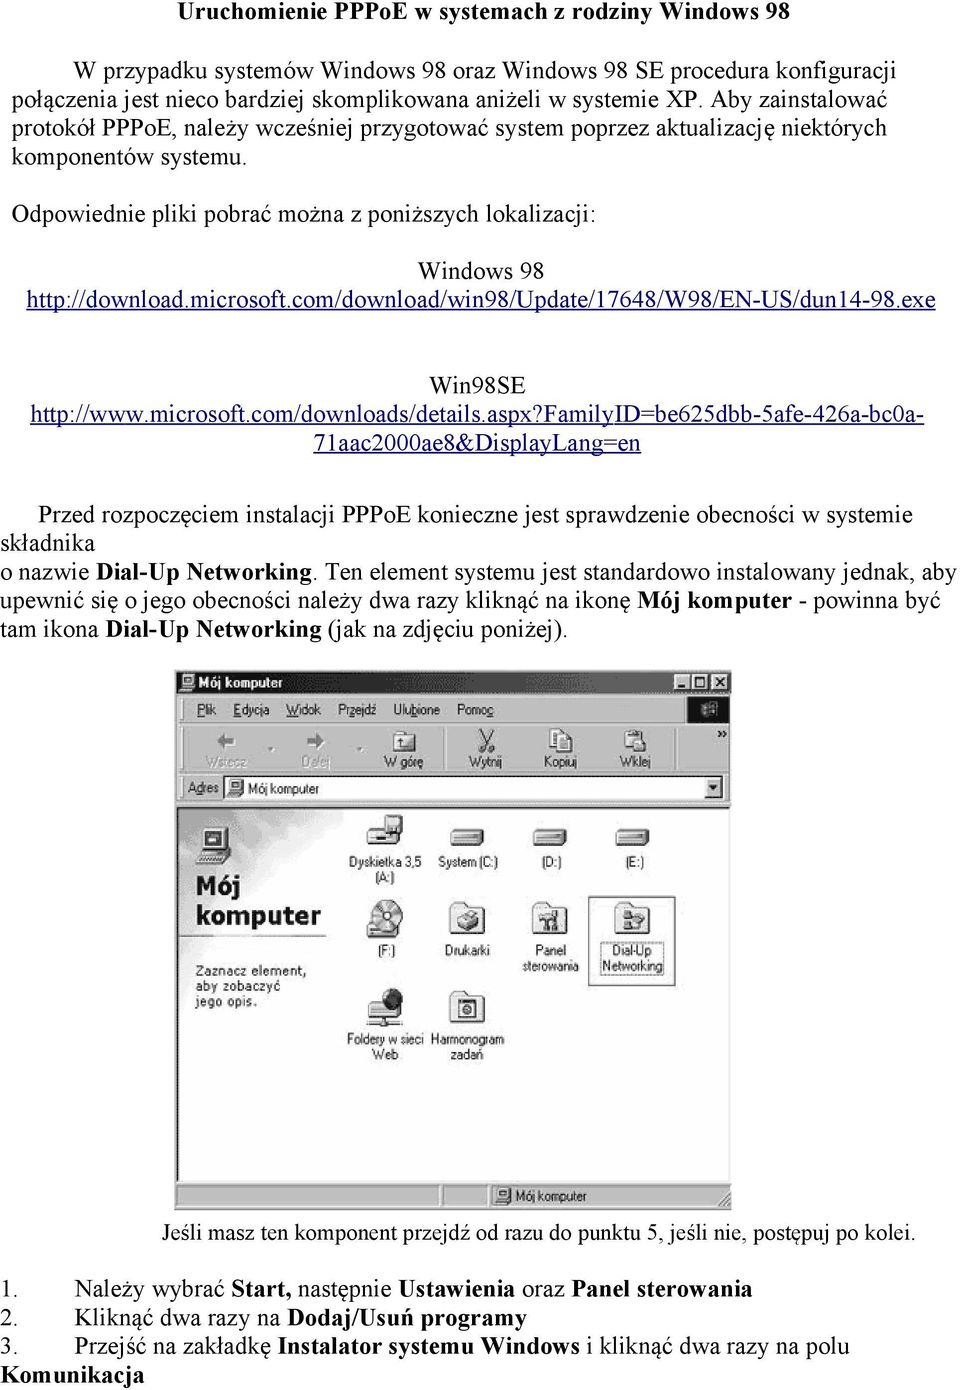 Odpowiednie pliki pobrać można z poniższych lokalizacji: Windows 98 http://download.microsoft.com/download/win98/update/17648/w98/en-us/dun14-98.exe Win98SE http://www.microsoft.com/downloads/details.